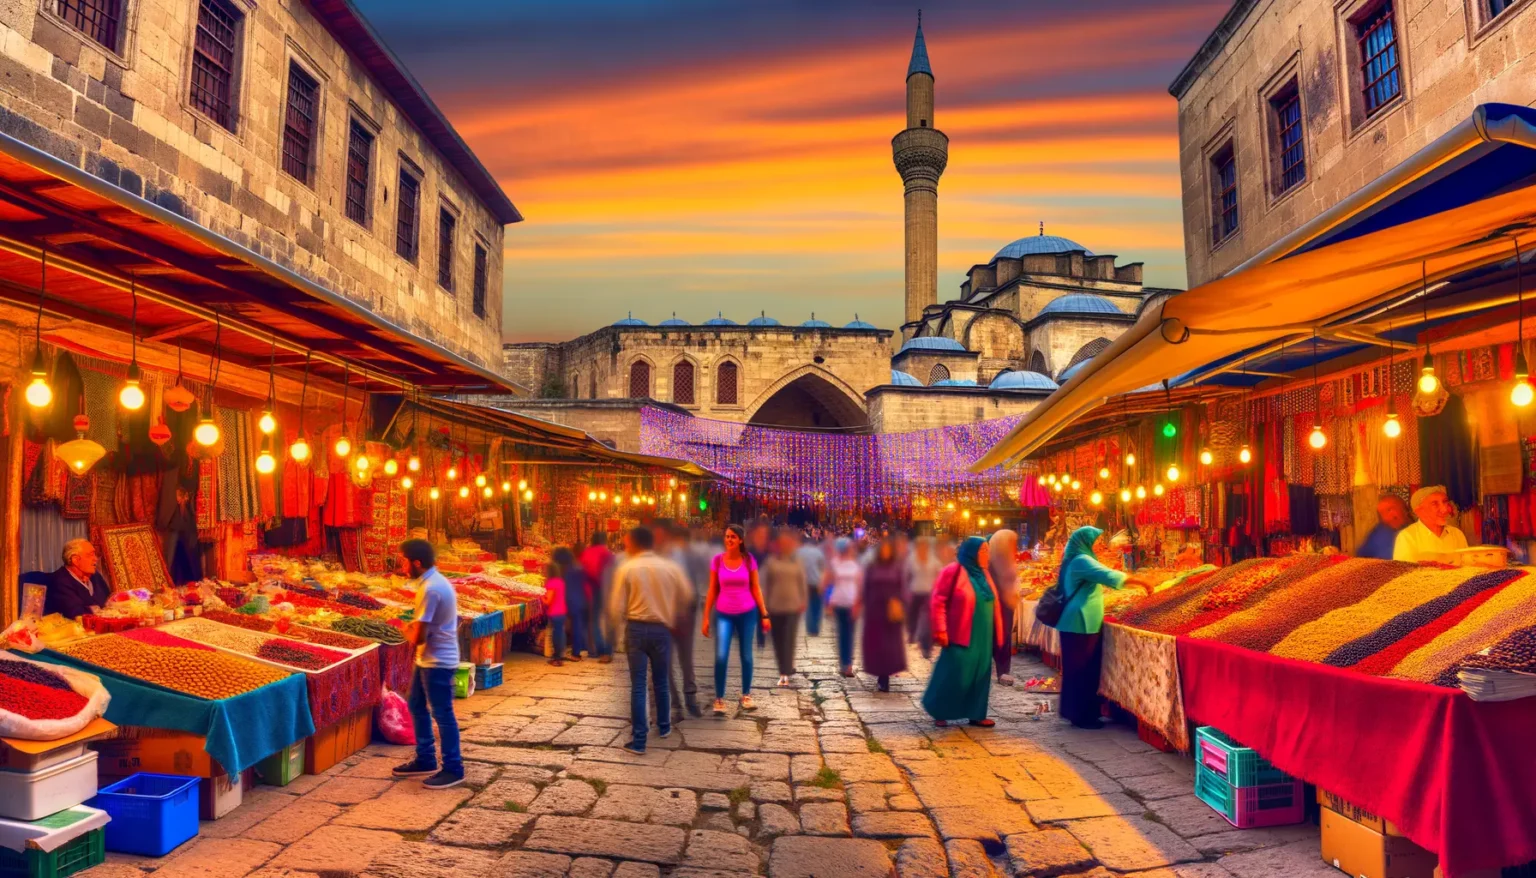 Lebendige Marktszene bei Sonnenuntergang mit verschiedenen Ständen, die Lebensmittel und Textilien verkaufen, vor der Kulisse einer Moschee mit einem Minarett. Menschen schlendern zwischen den Ständen hindurch unter einer Reihe von Lichterketten.